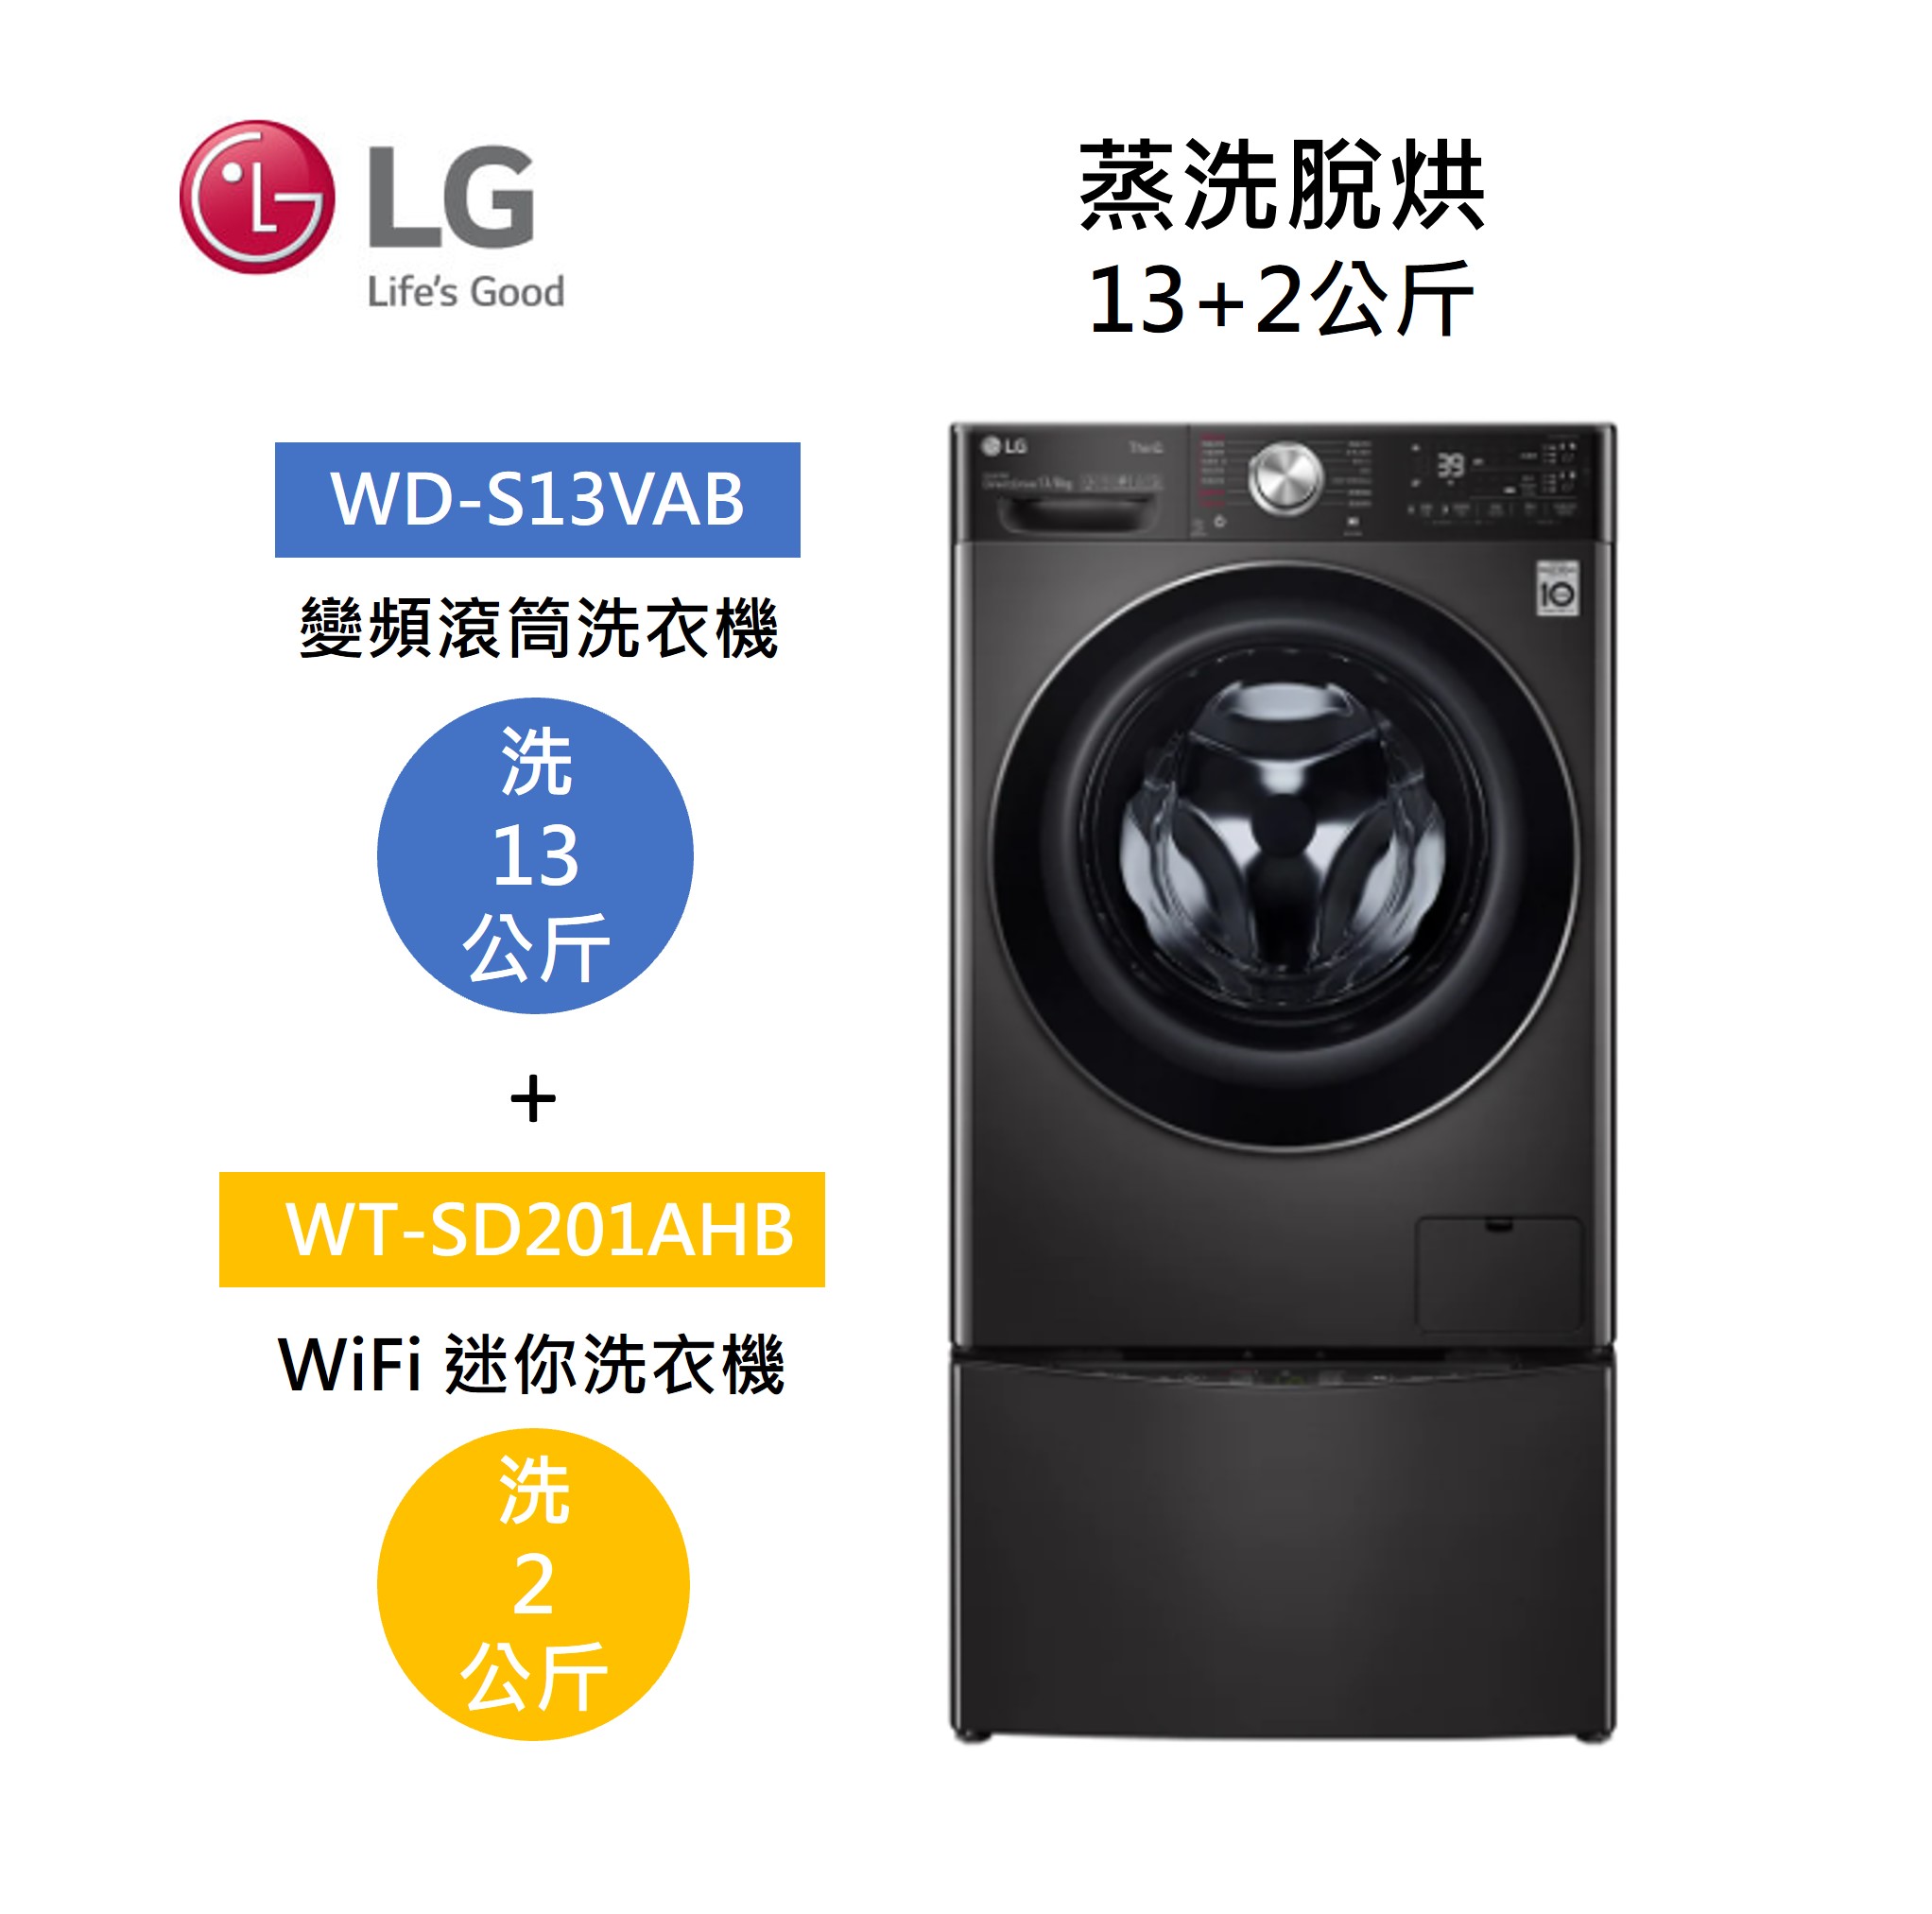 【點數回饋5+8%點數回饋】LG 樂金 WD-S13VAB+WT-SD201AHB 13+2公斤 洗衣機 尊爵黑 蒸洗脫烘